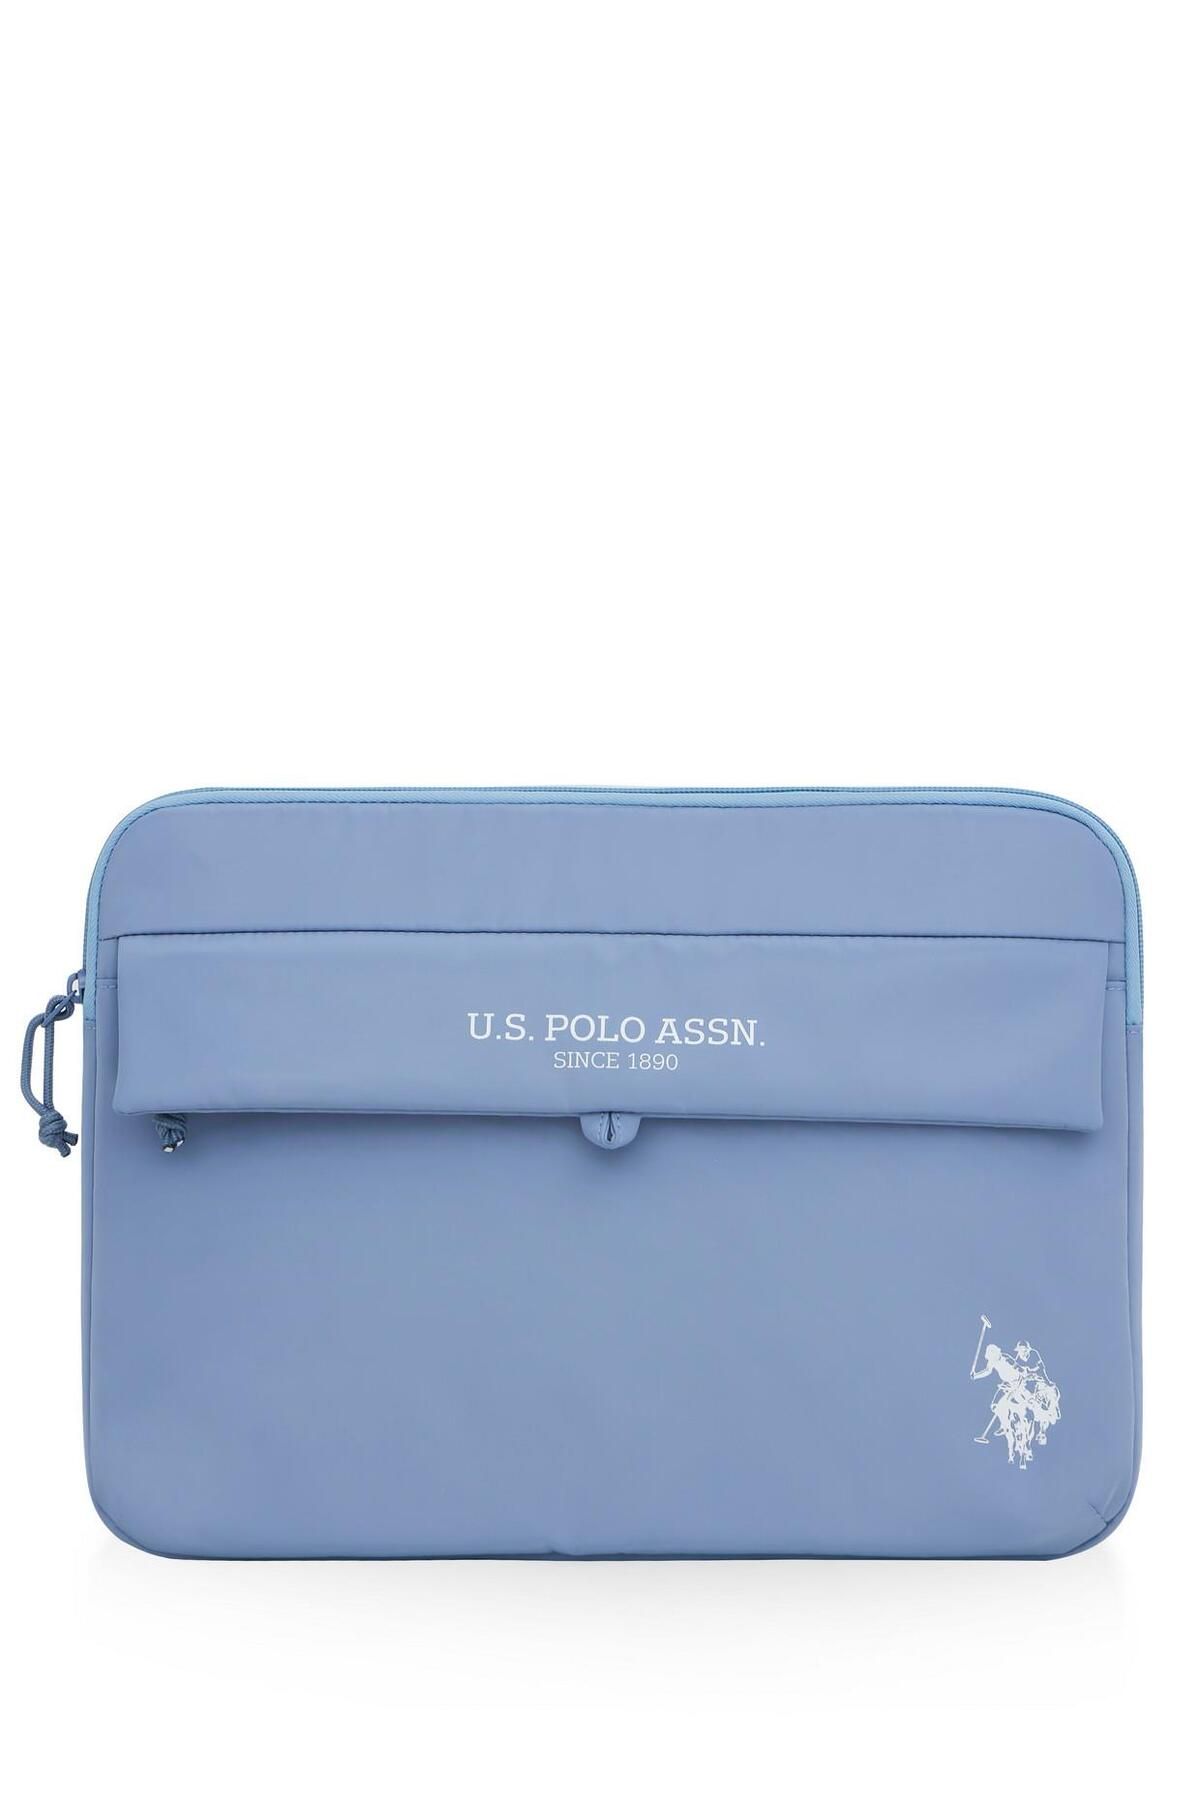 U.S. Polo Assn. U.S. POLO ASSN. PLEVR23683 Gri Unisex Tablet Çantası